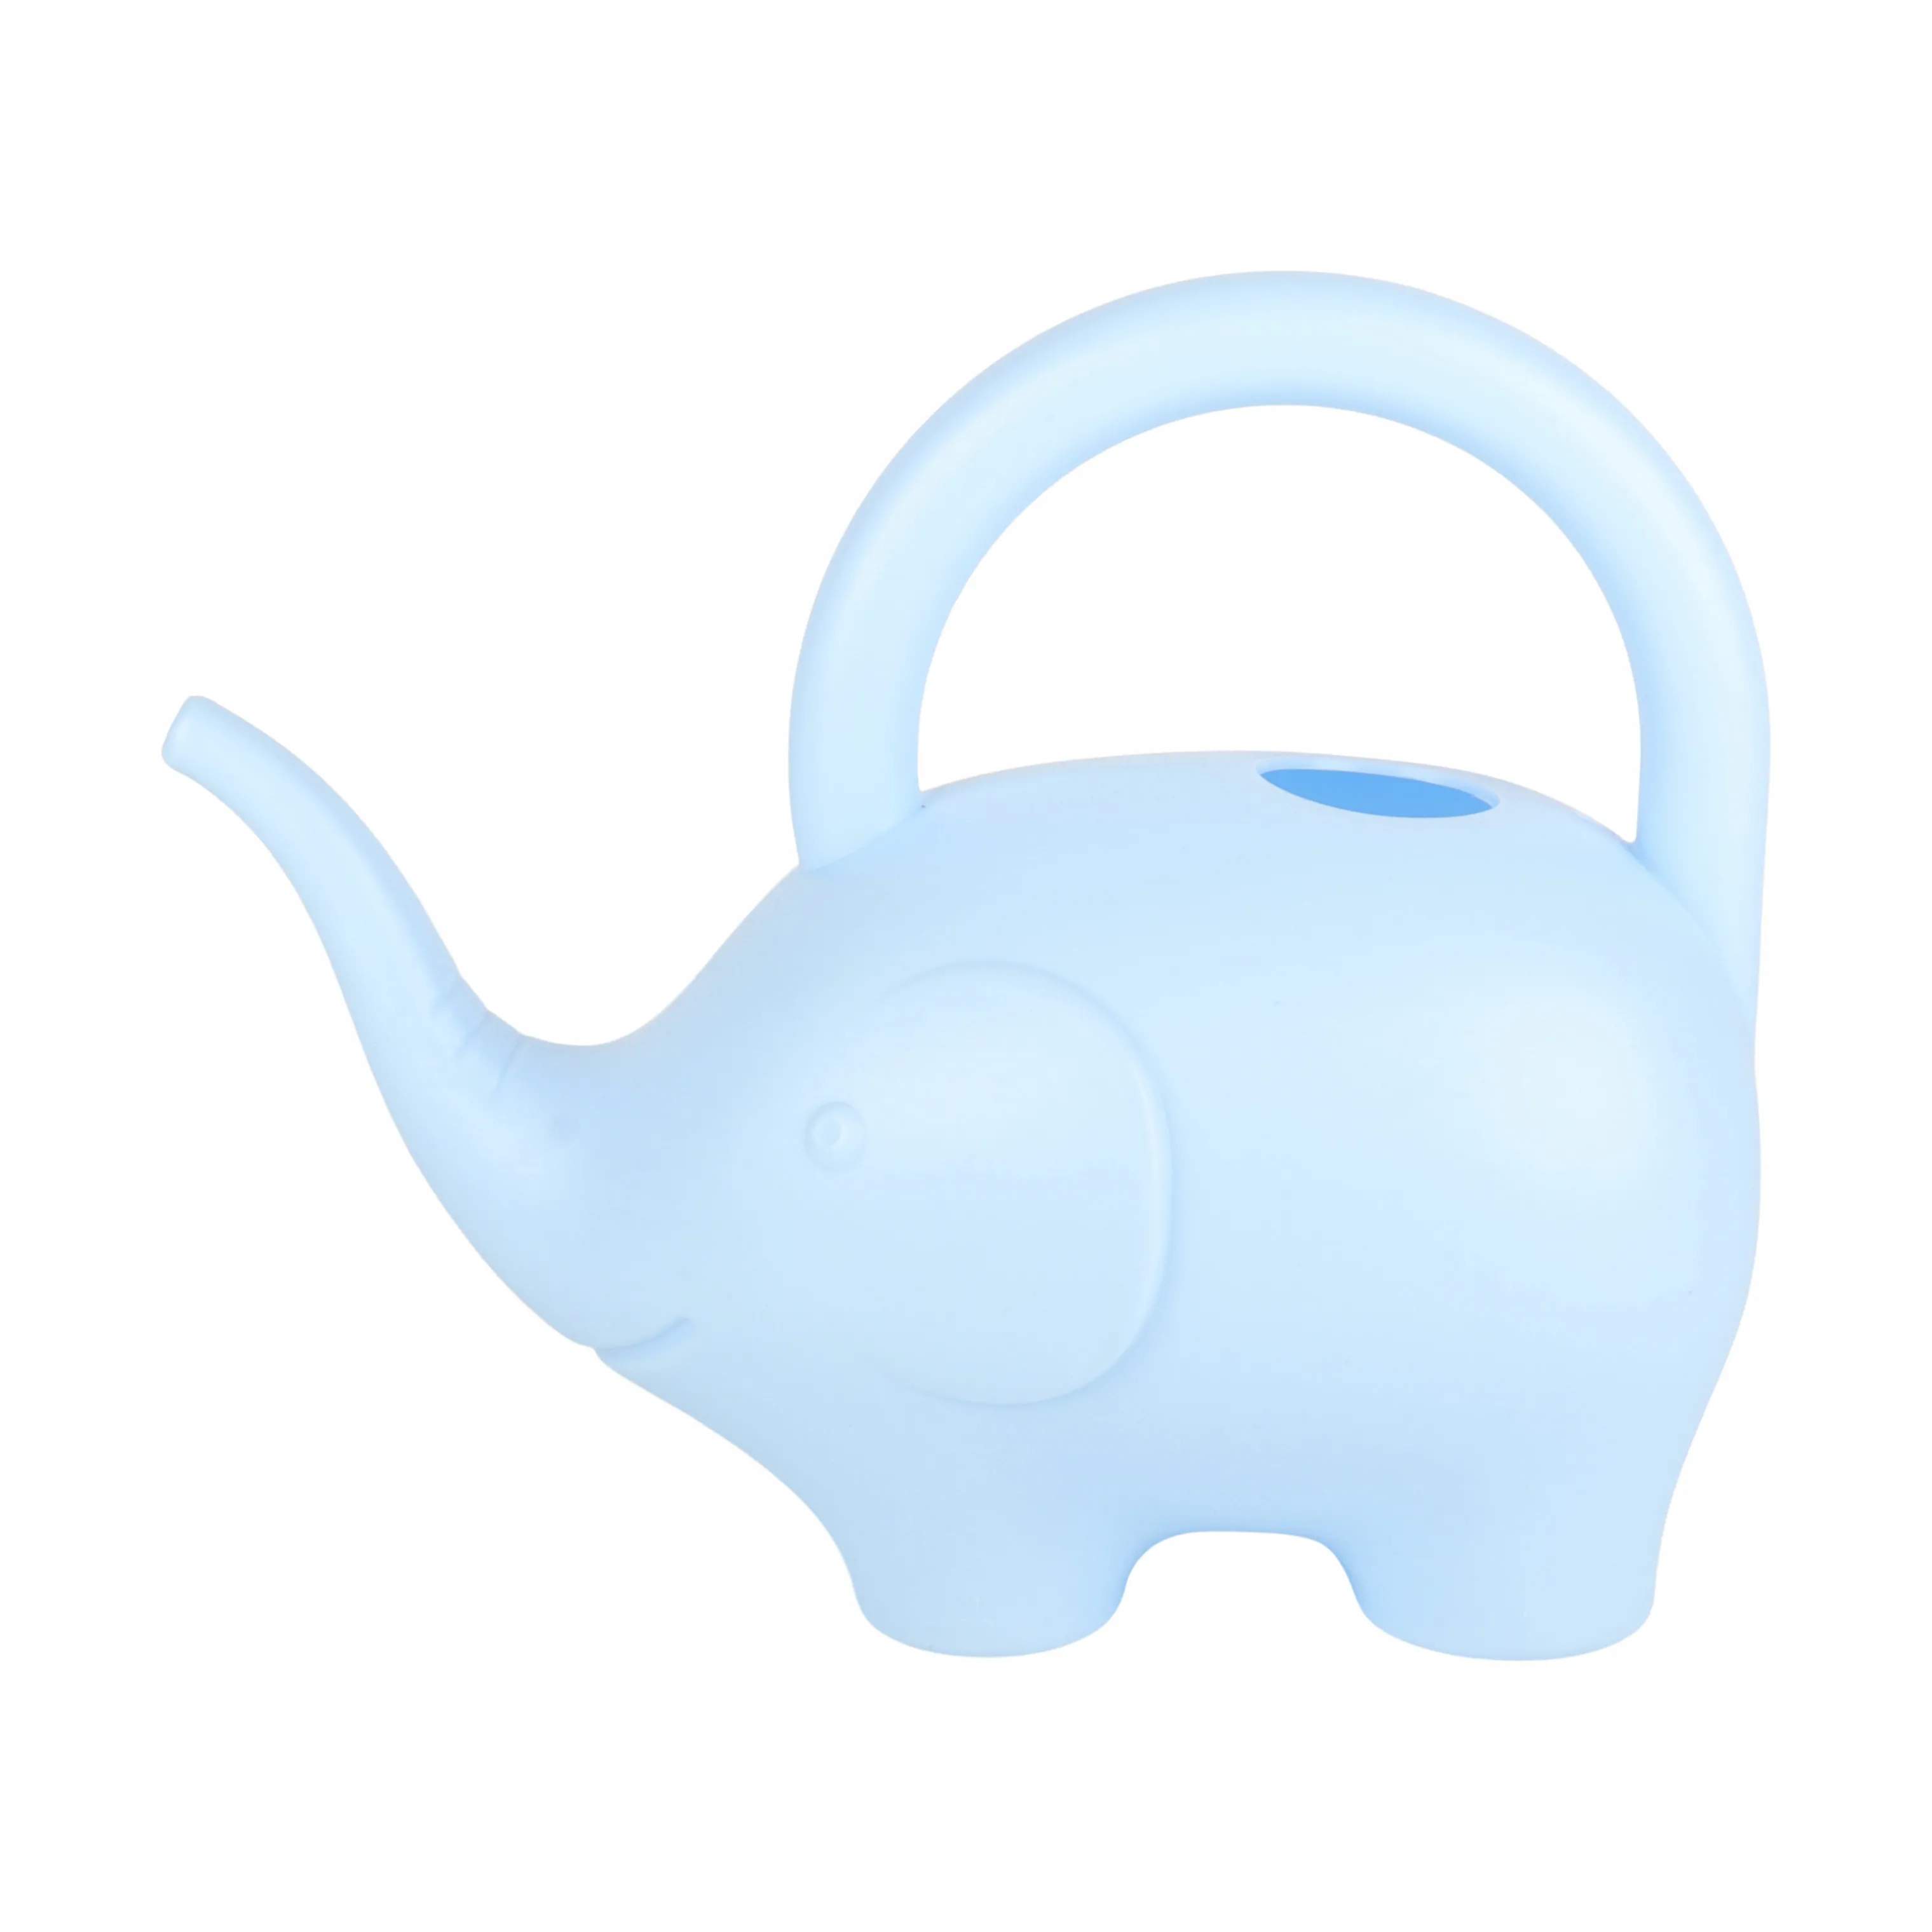 Vandkande - Elefant, blå, large